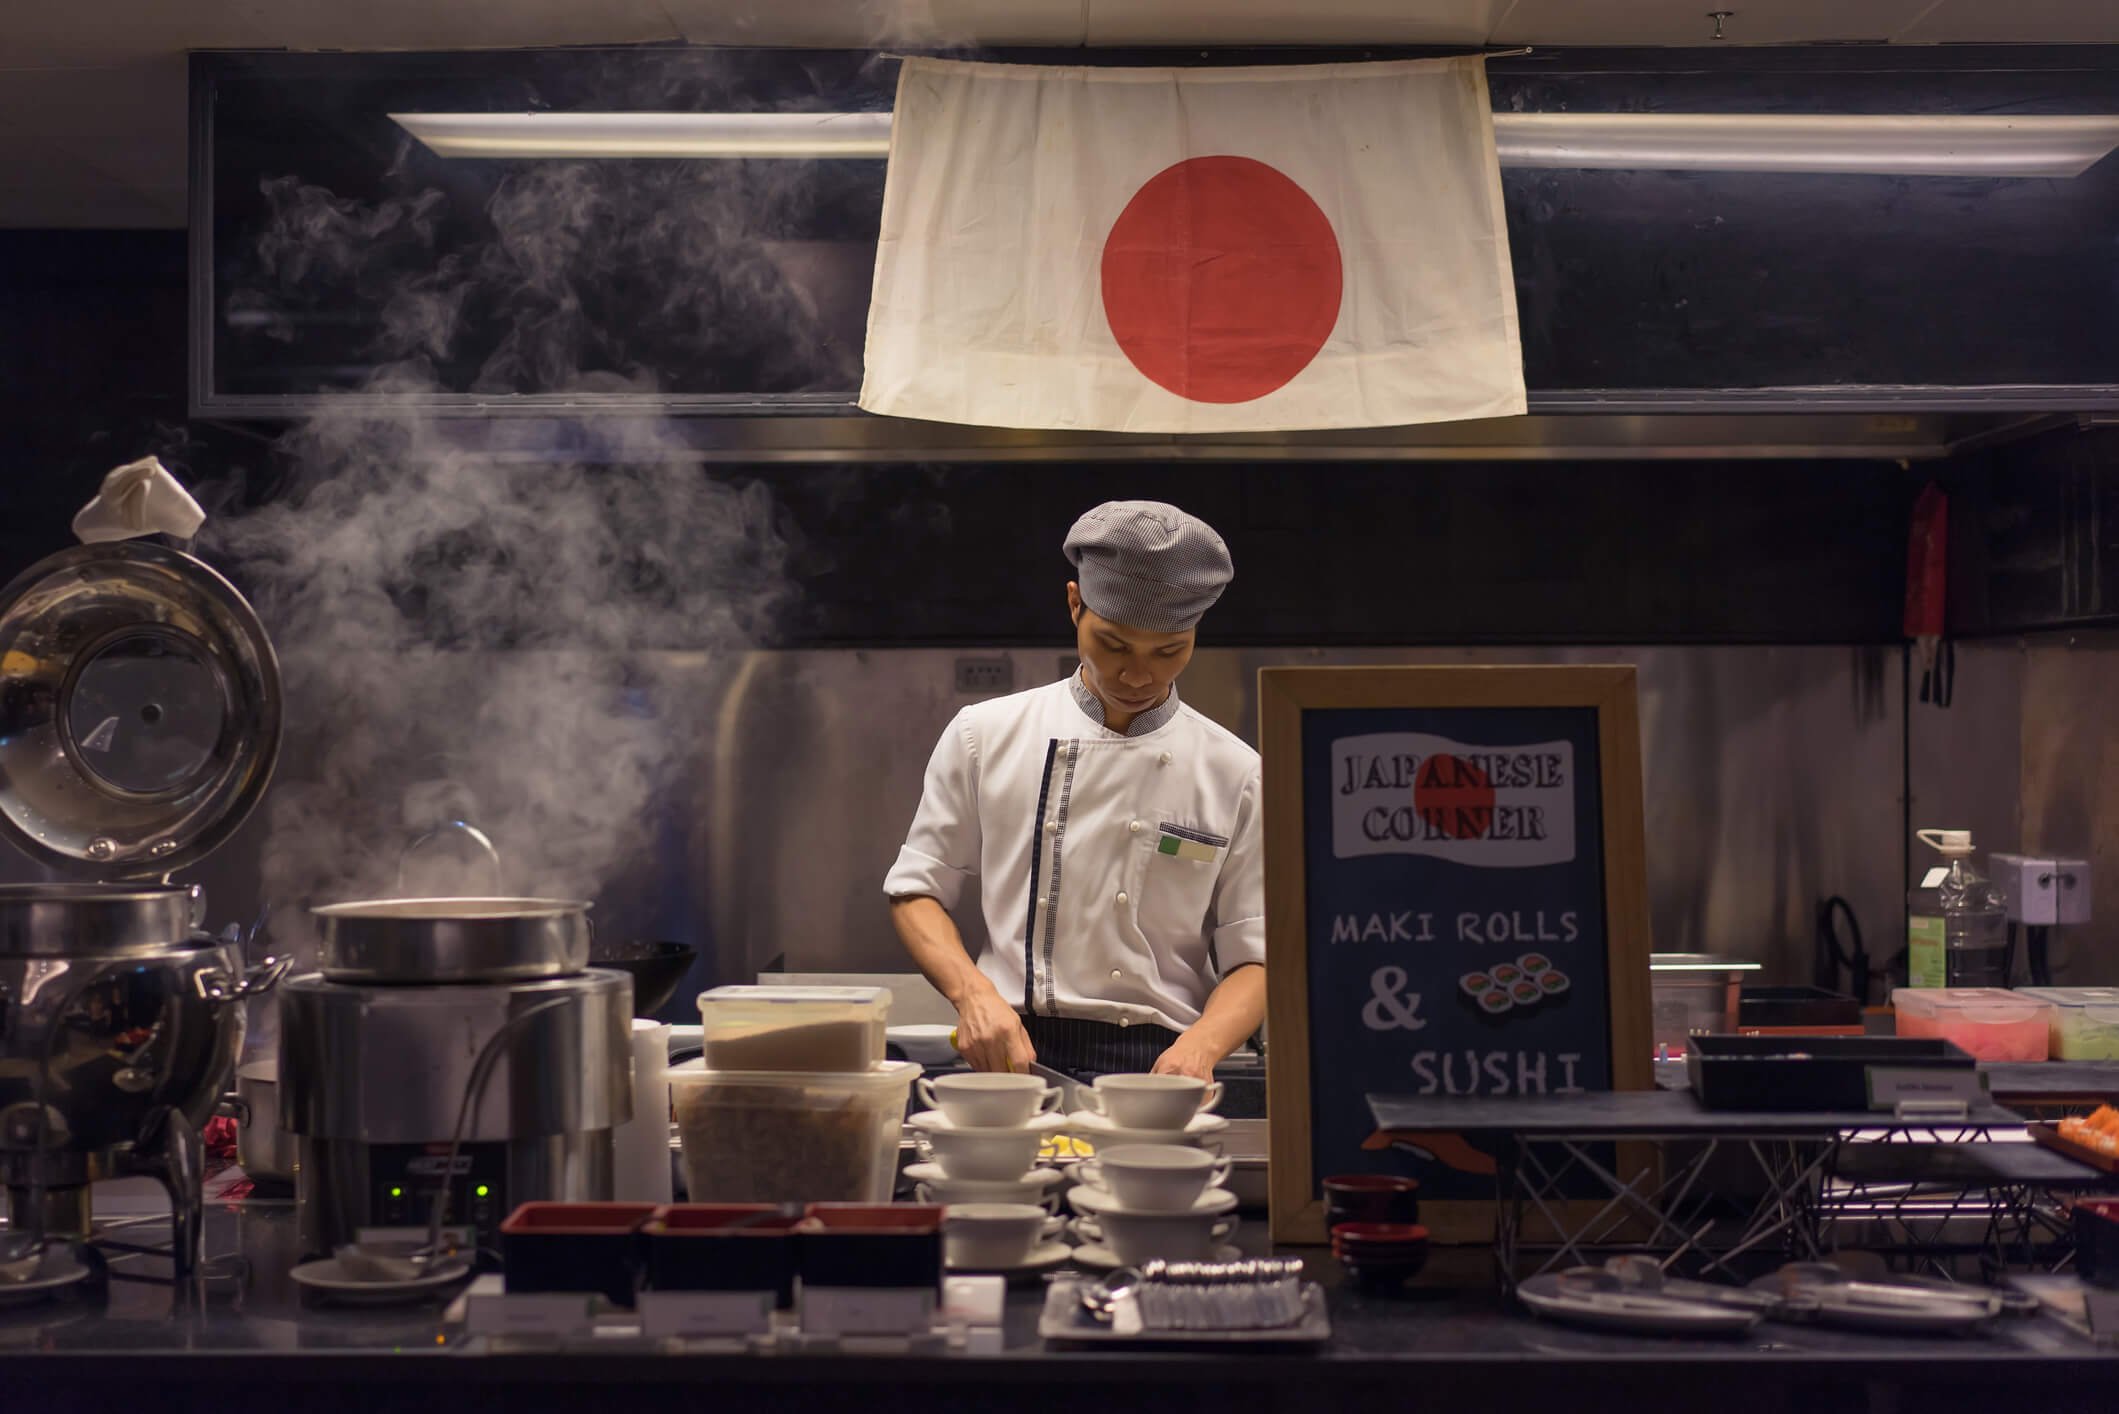 ธุรกิจอาหารญี่ปุ่นครองใจคนไทย ทะยานอันดับ 6 โลก  โตแรงสวนกระแส หม่าล่า